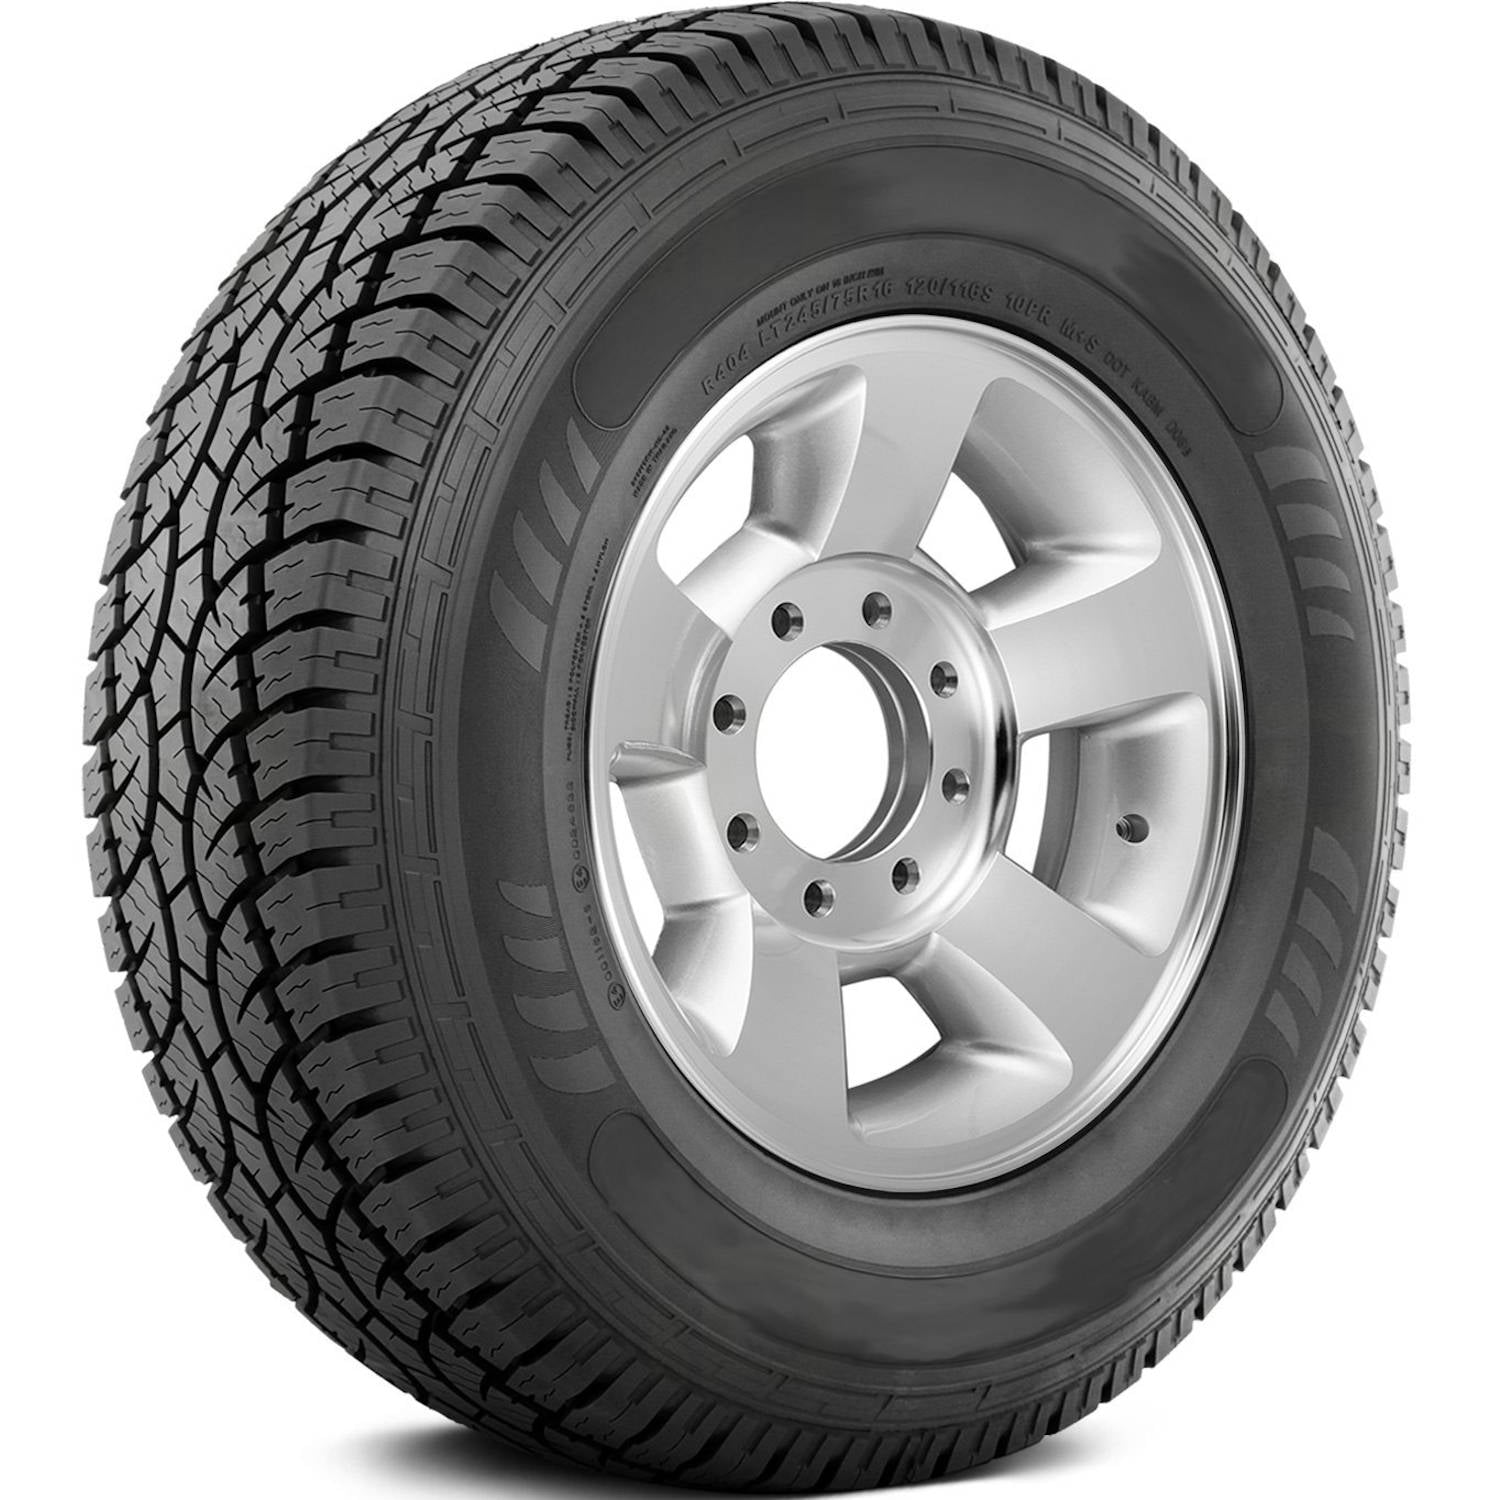 AMERICUS RUGGED ALL TERRAIN LT215/85R16 (30.4X8.5R 16) Tires